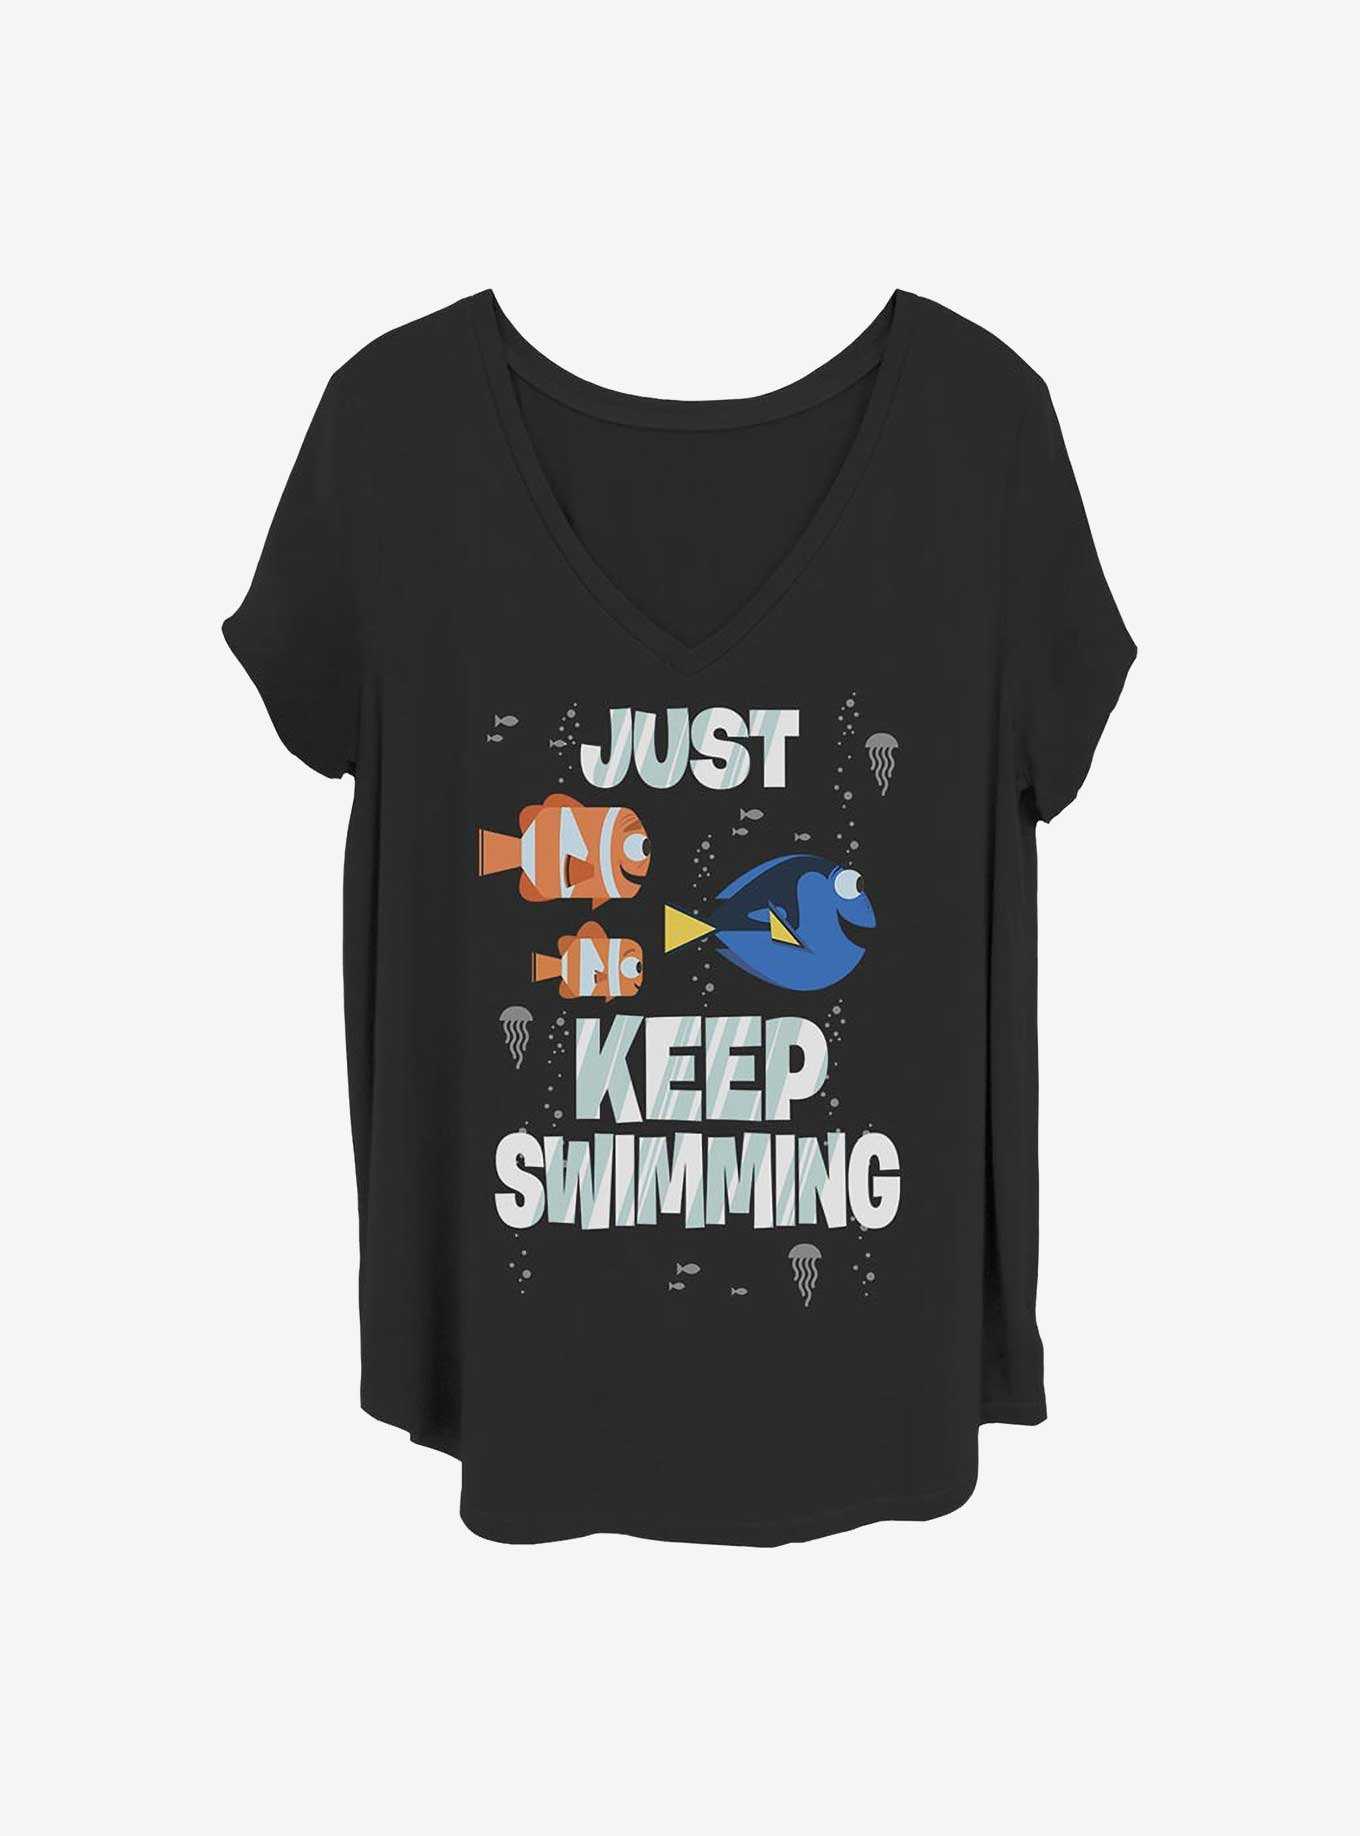 Disney Pixar Finding Nemo Just Swimming Girls T-Shirt Plus Size, , hi-res